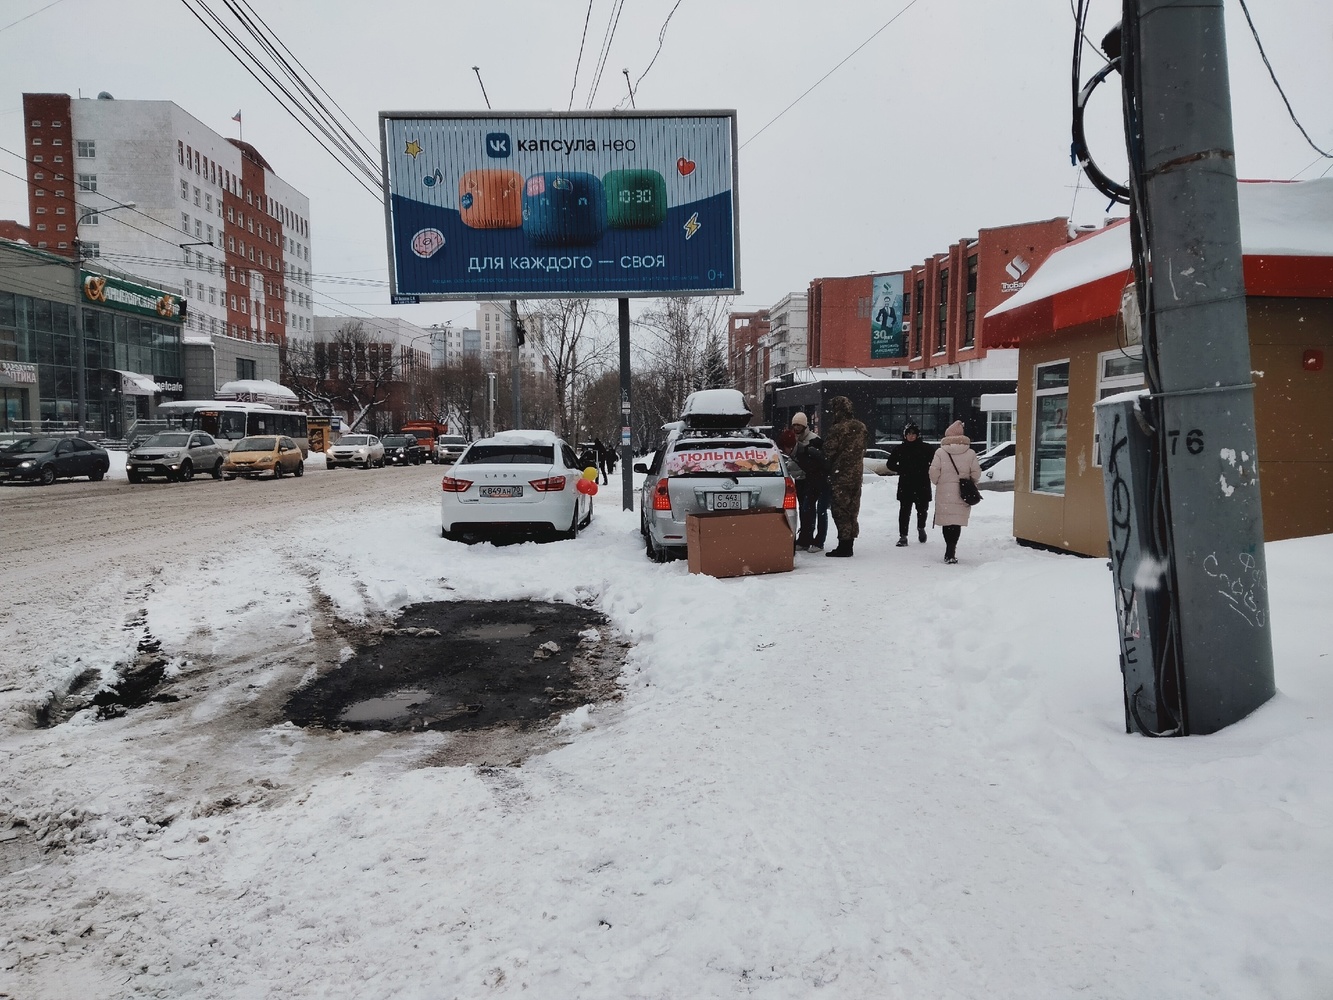 Томск отмечает 8 марта: снежно, серо и малолюдно